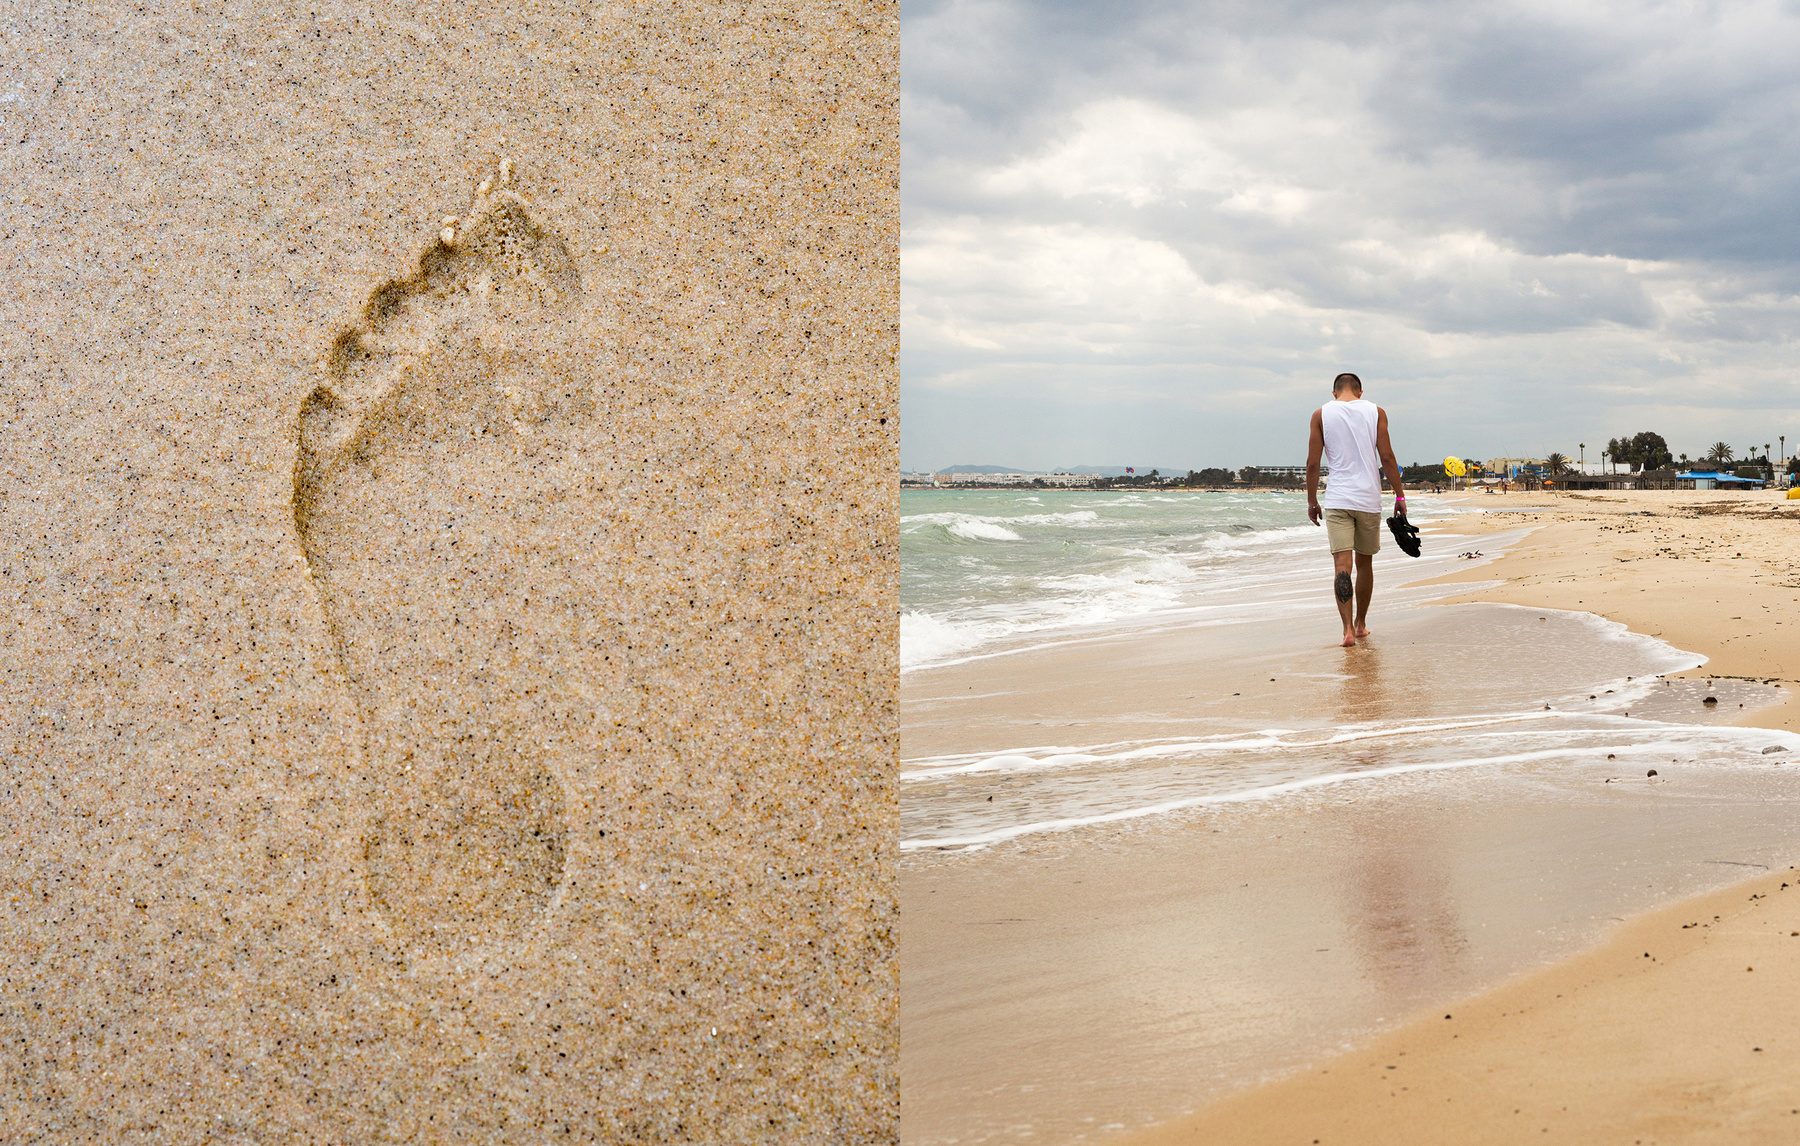 Оставить свой след... тунис море пляж песок отдых путешествие облака волны небо парень